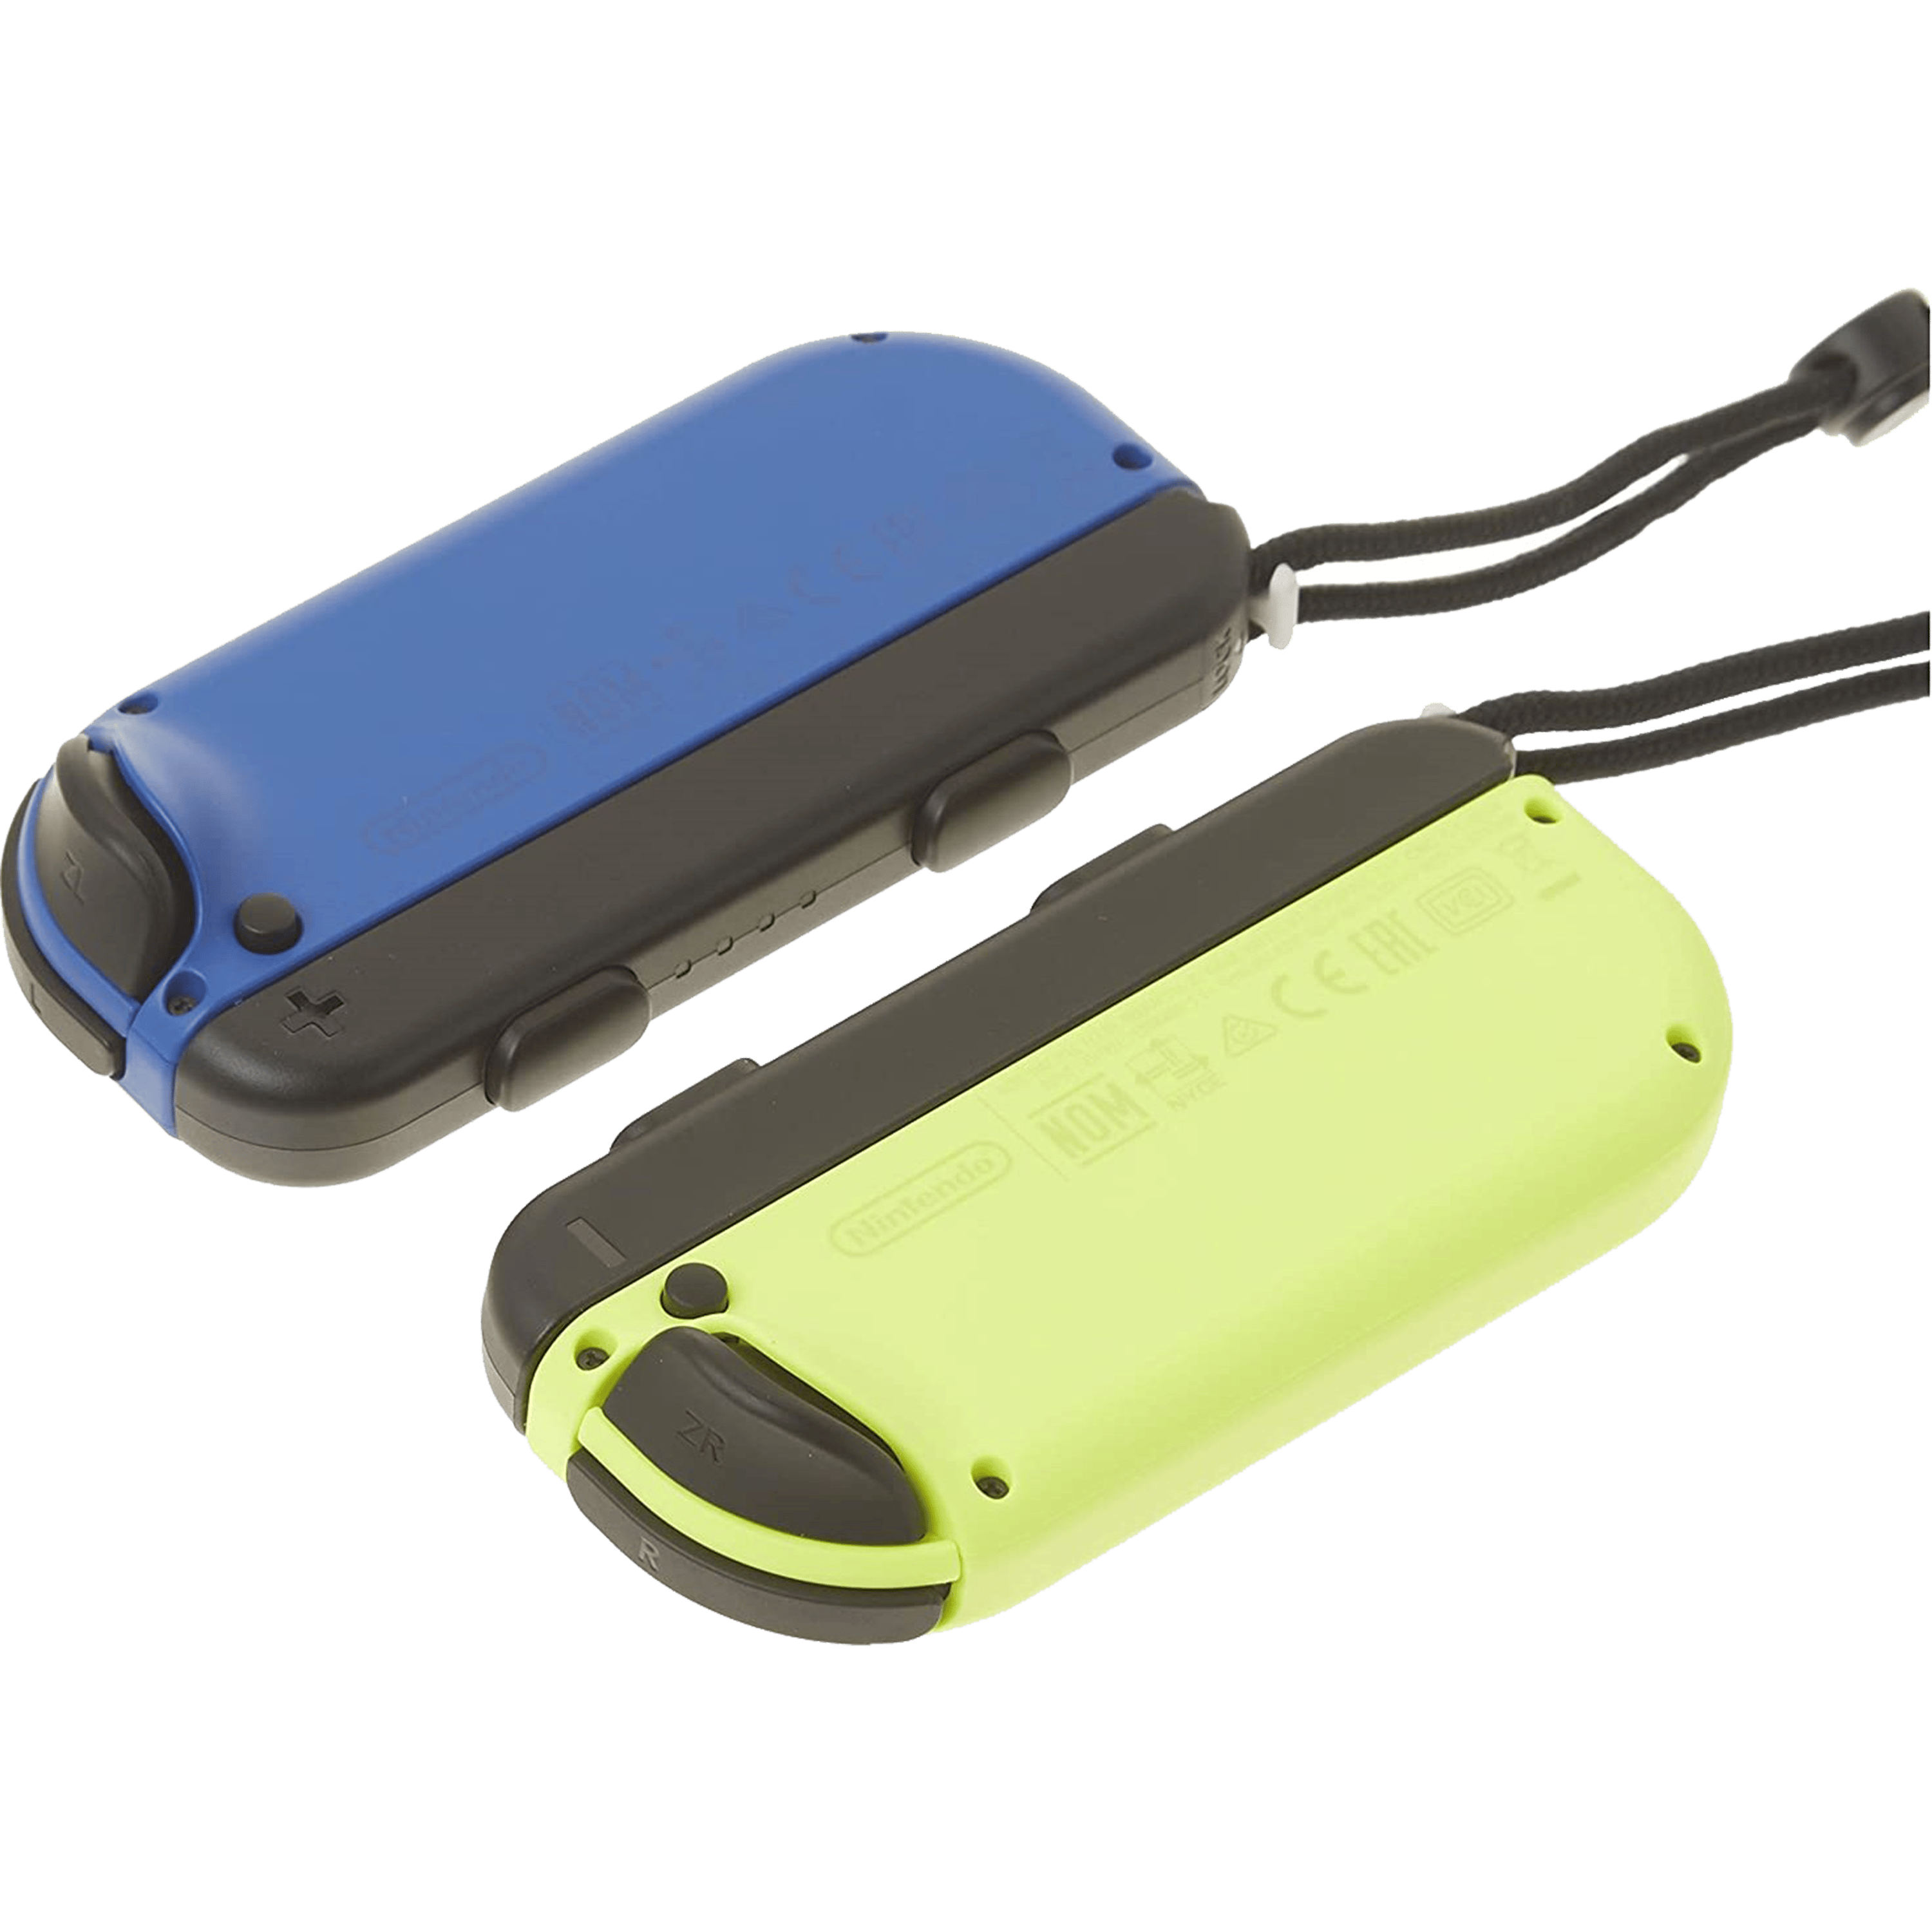 זוג בקרי שליטה Nintendo Switch Joy-Con Pair Blue/Neon Yellow - צבע כחול/צהוב שנה אחריות ע